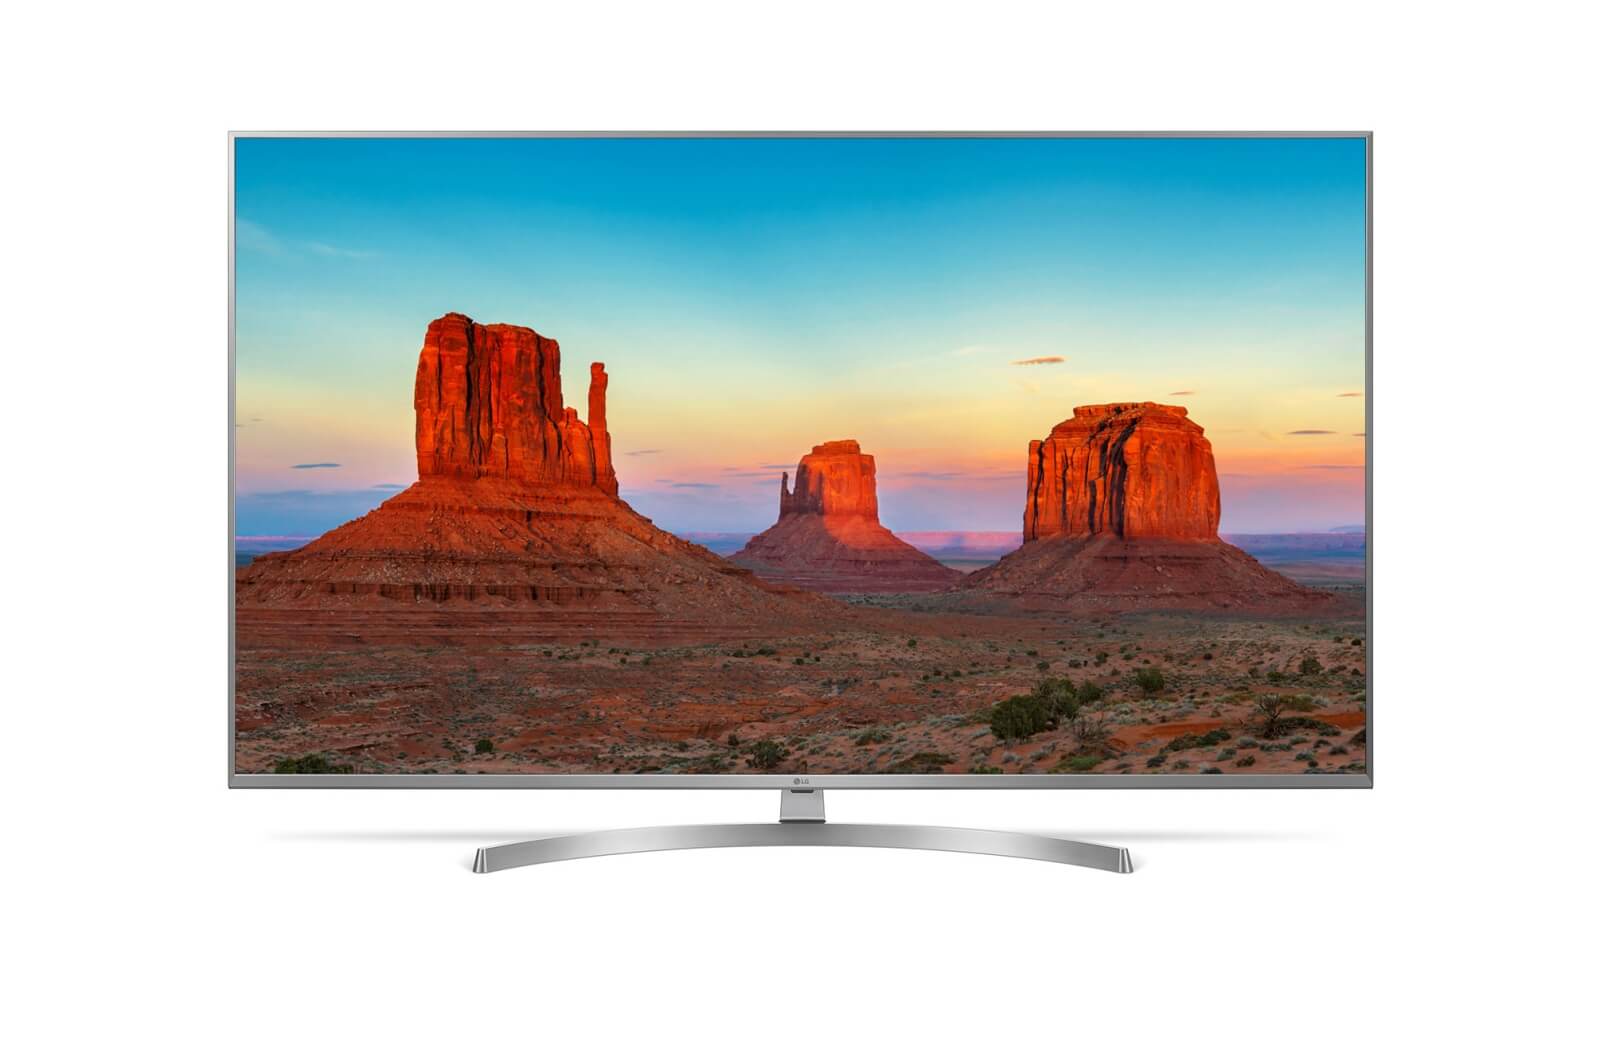 Телевизор 1 50 см. Led телевизор LG 32lk615b. LG 49uk6200. Телевизор led LG 49uk6200pla. Телевизор LG 50uk6510 49.5" (2018).